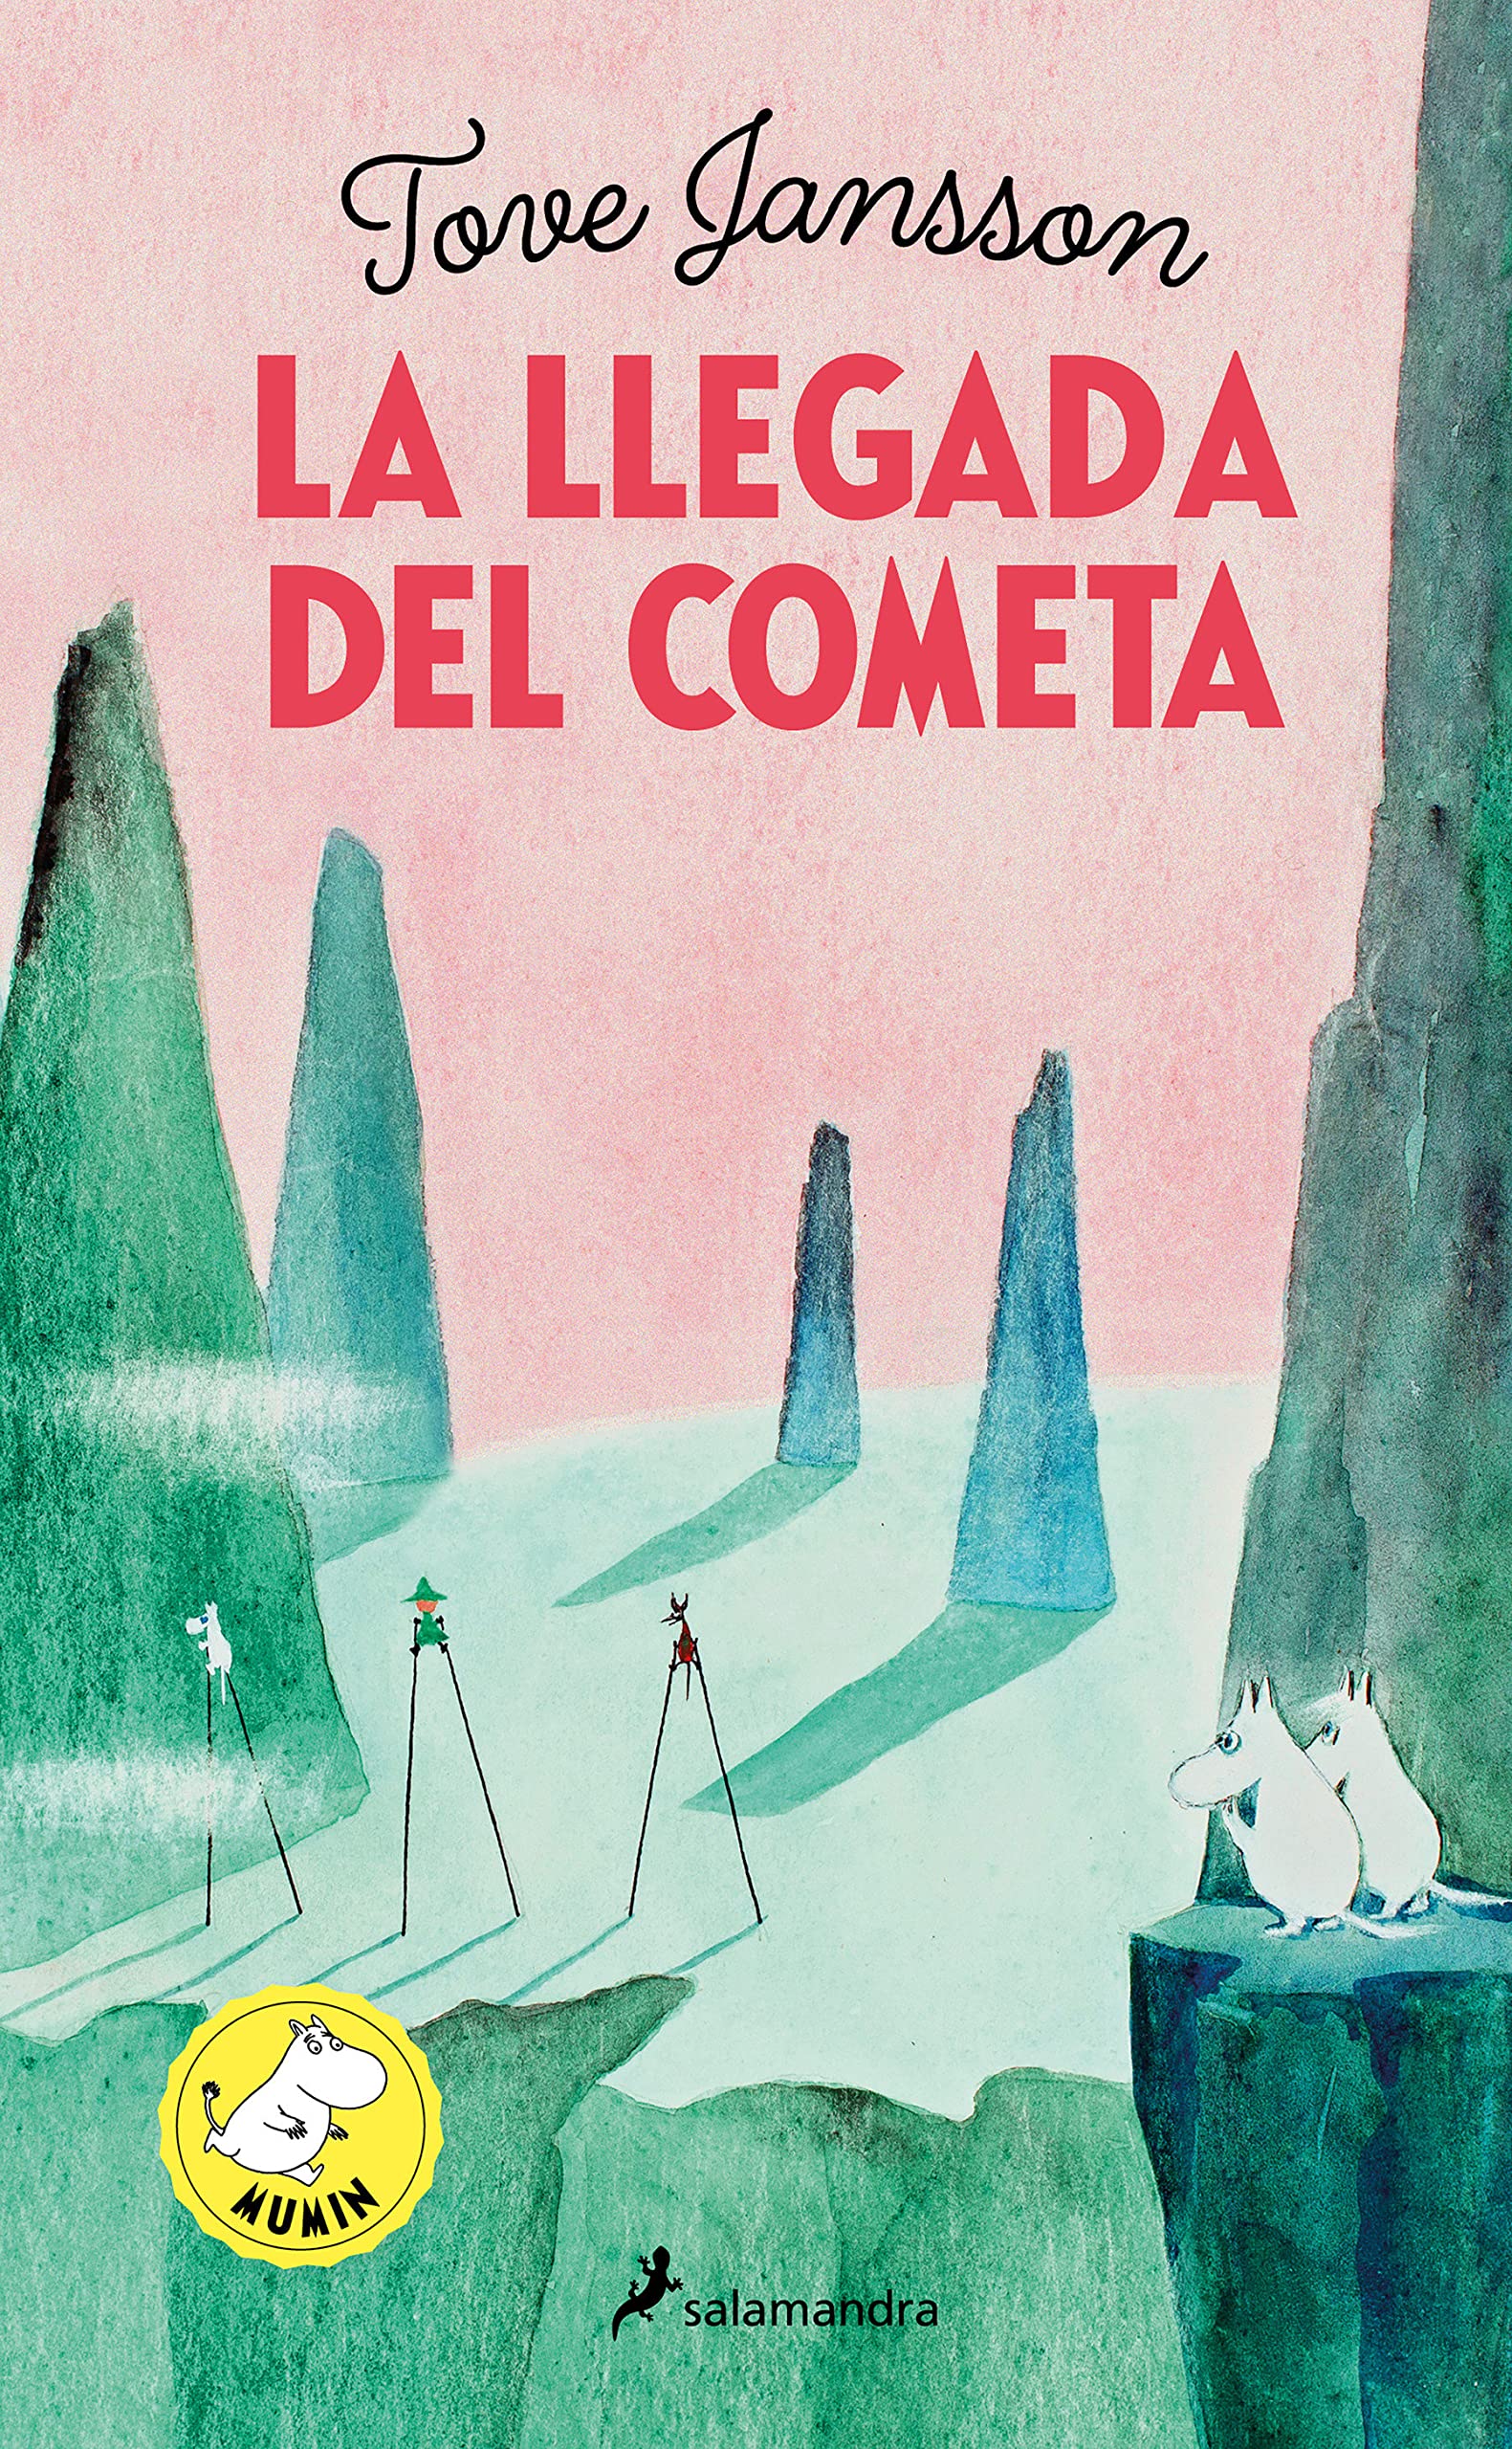 ‘La llegada del cometa’, de Tove Jansson: Camino a casa